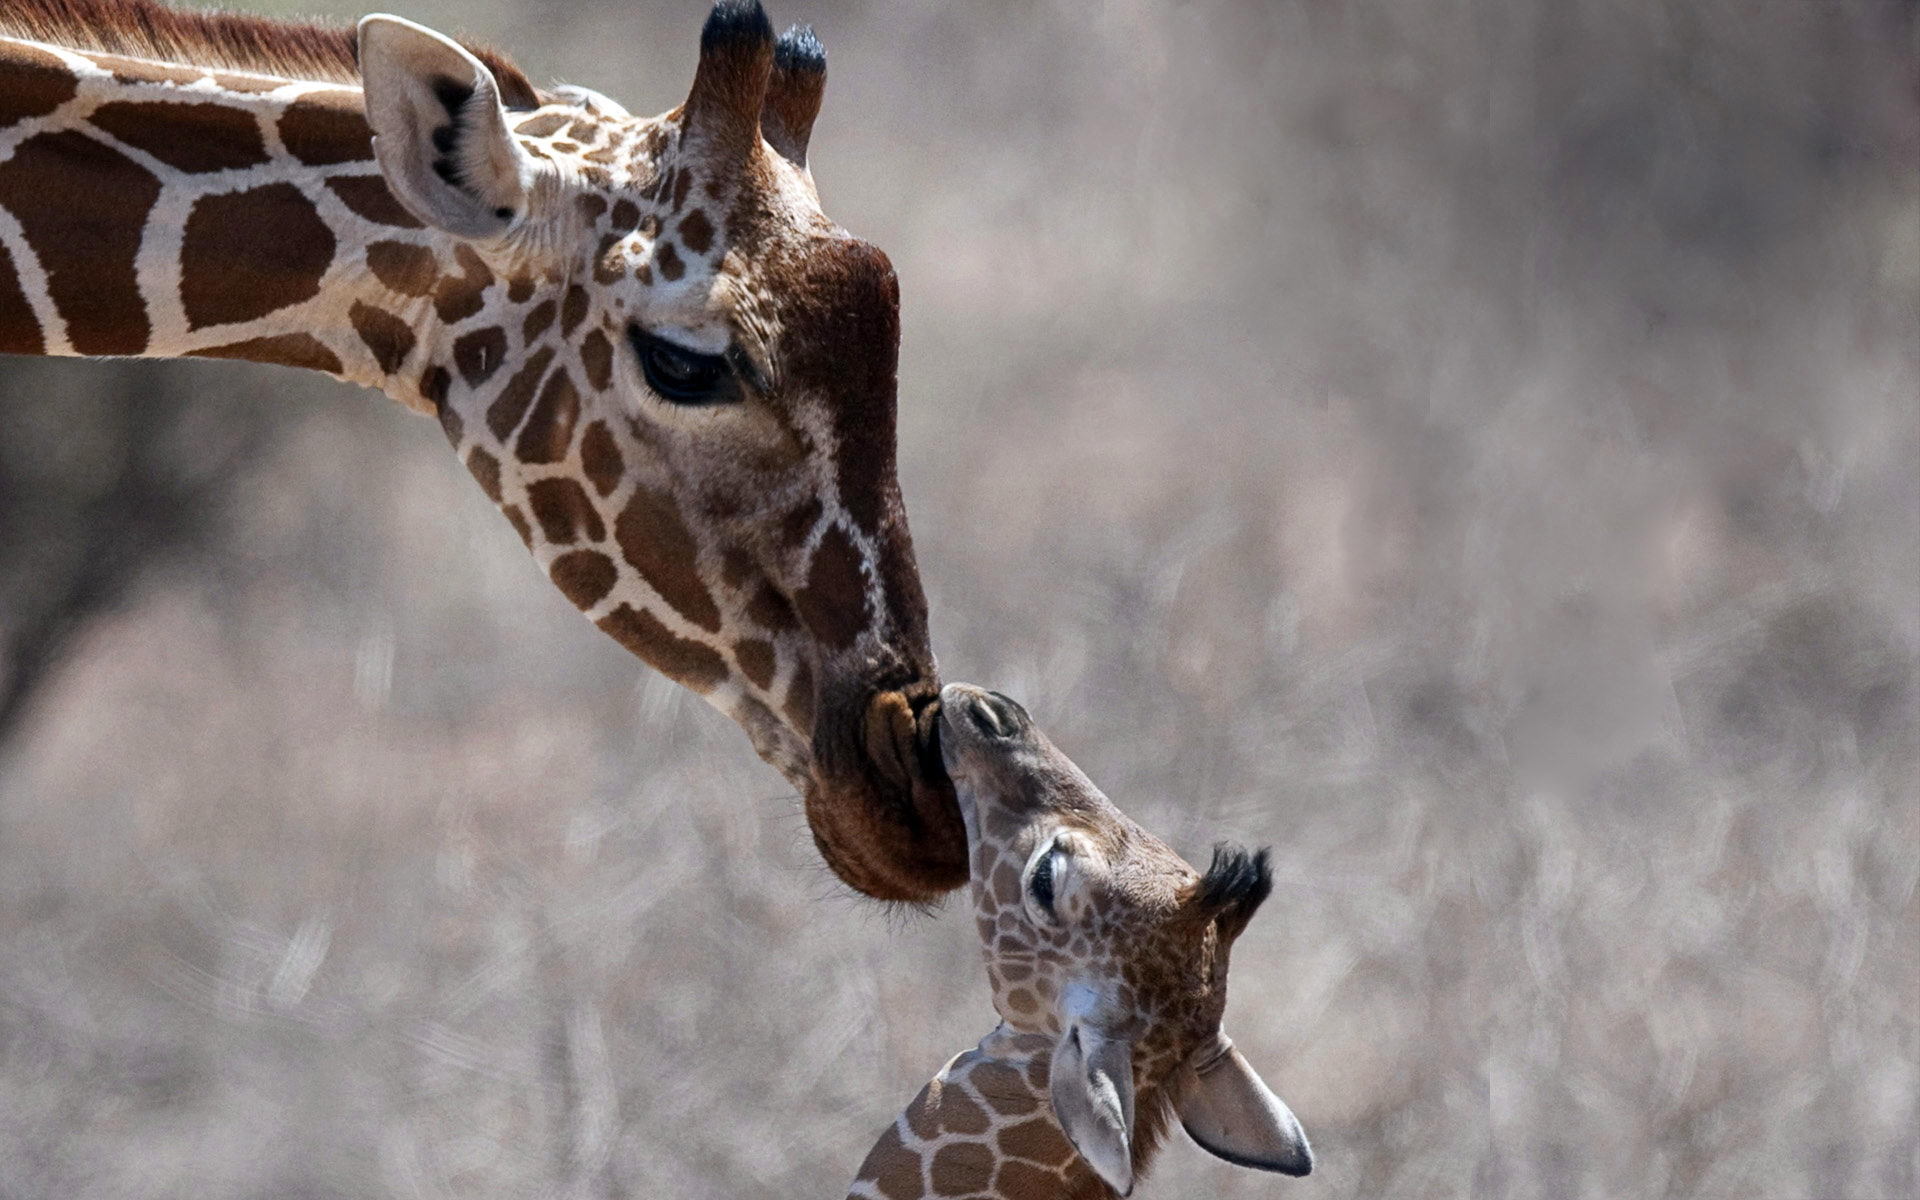 兽医偷偷接近长颈鹿,结果它妈妈猛地一踢,痛的